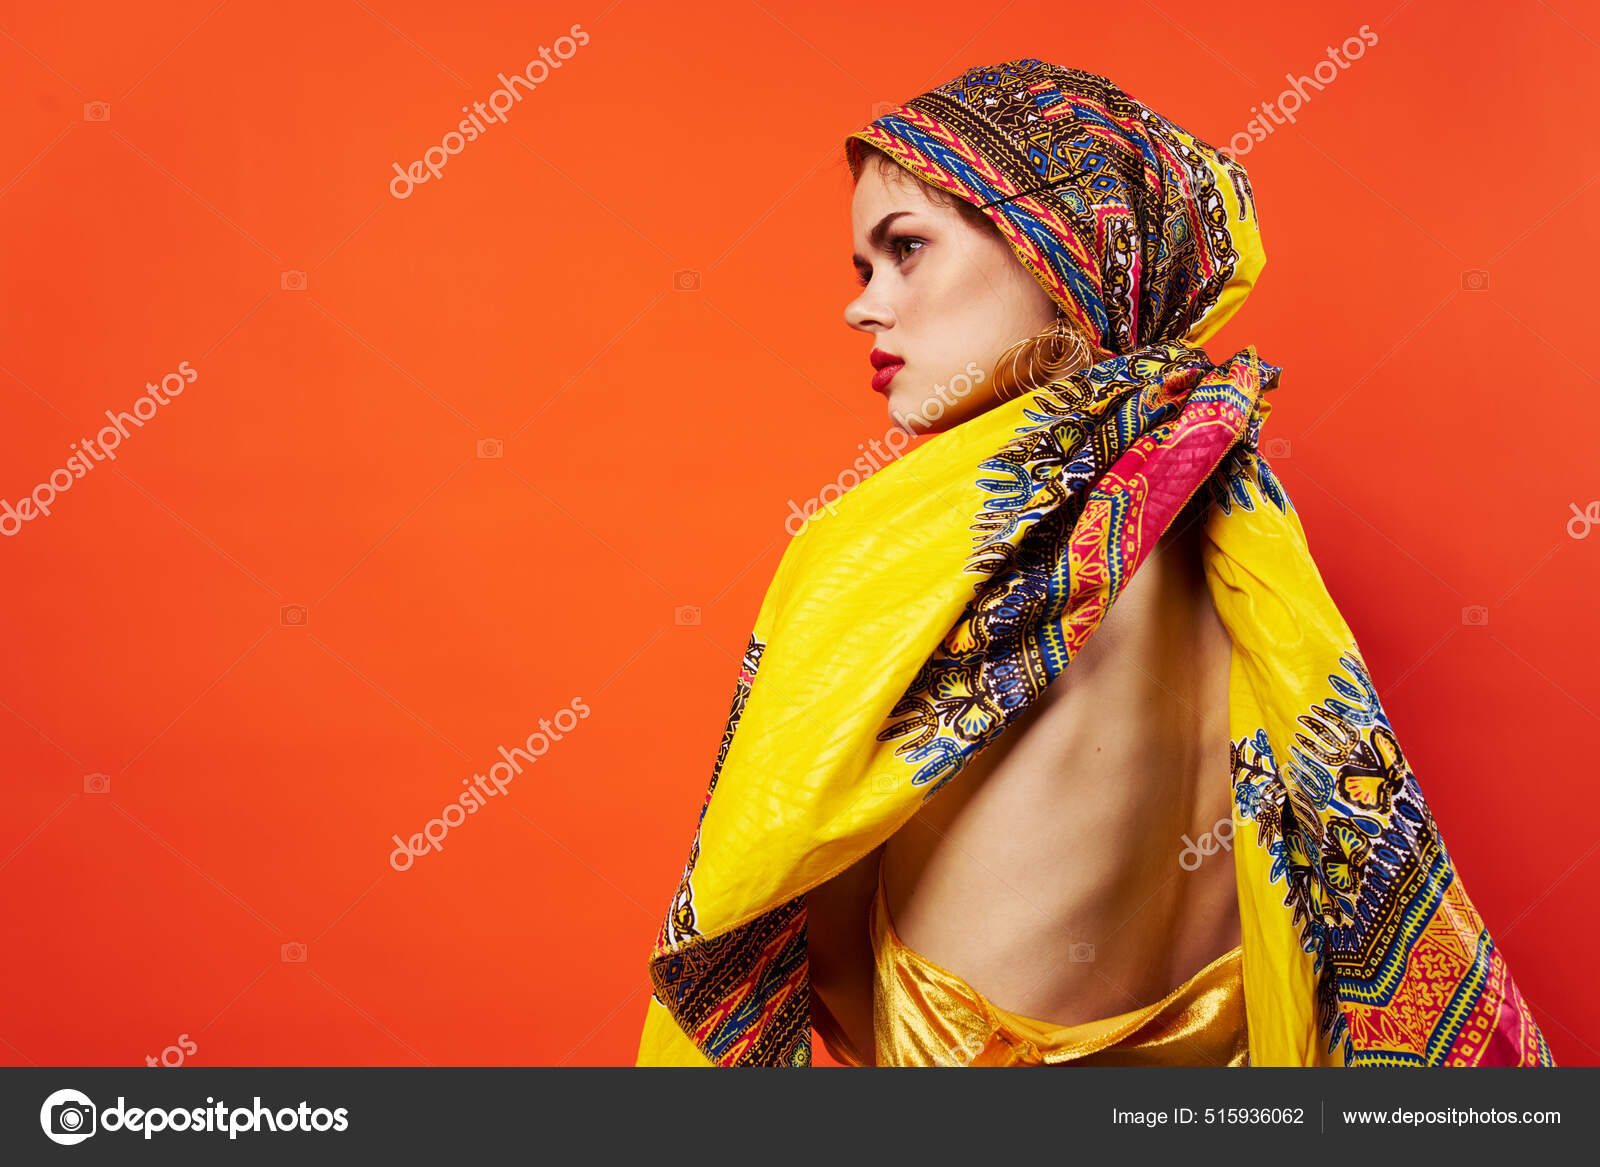 vrouw etniciteit veelkleurig hoofddoek make-up glamor achtergrond ⬇ Stockfoto, rechtenvrije foto © ShotStudio